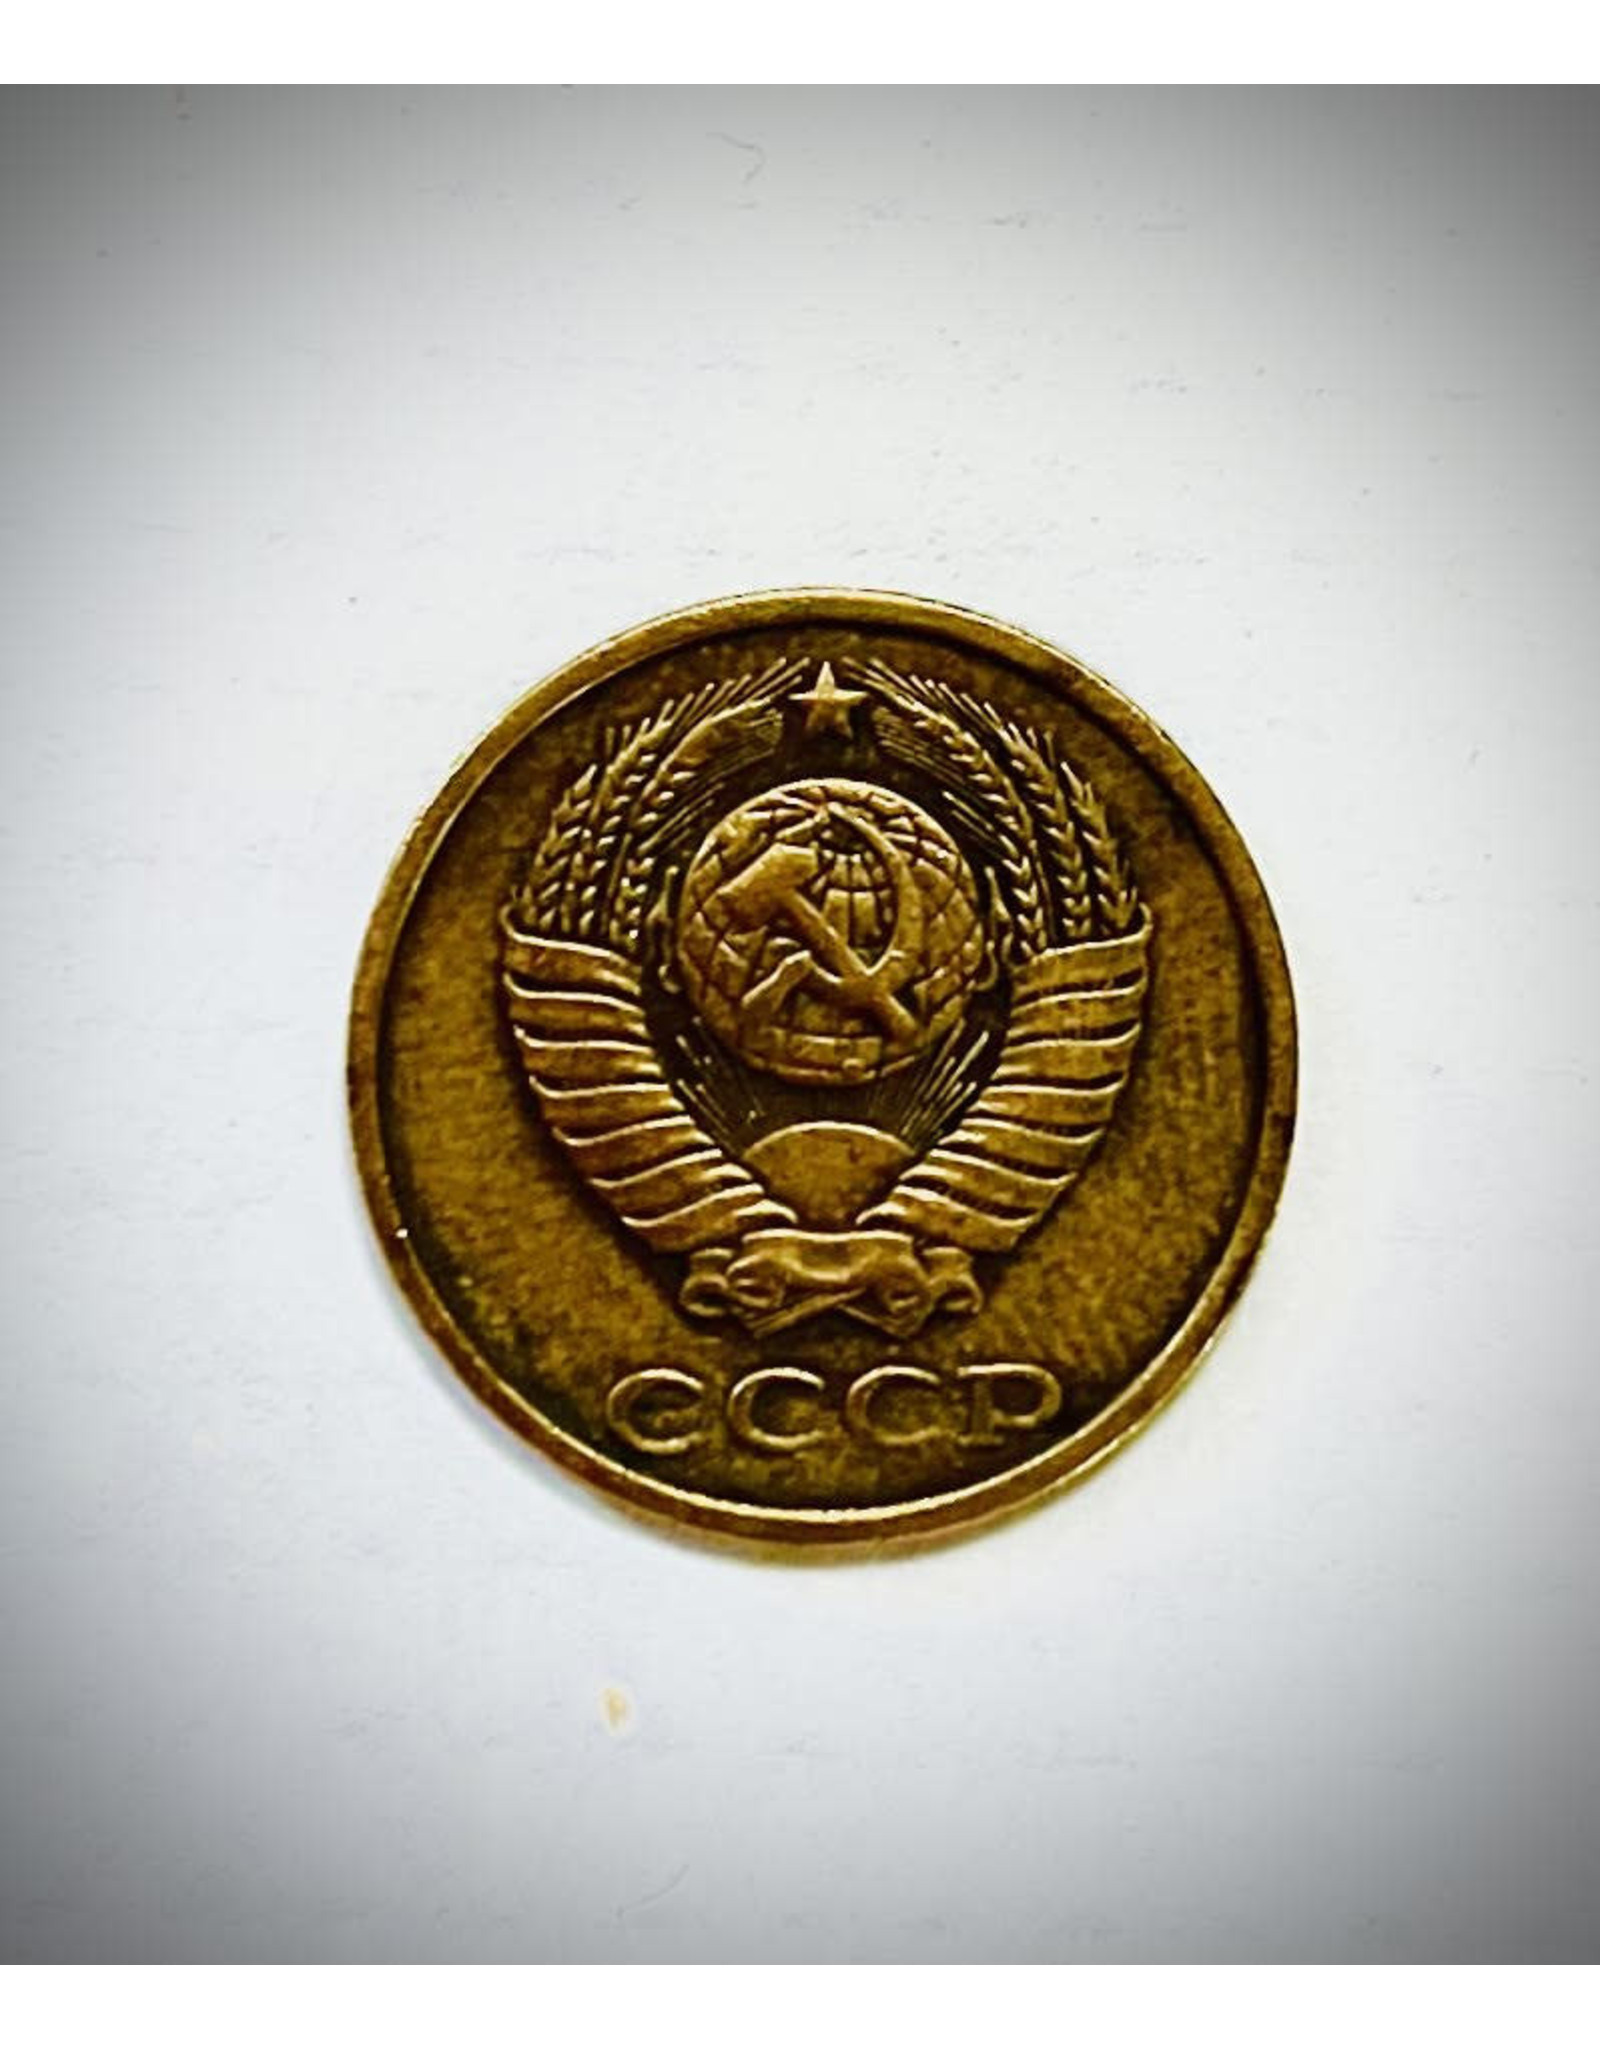 Soviet 2 Kopek Coin